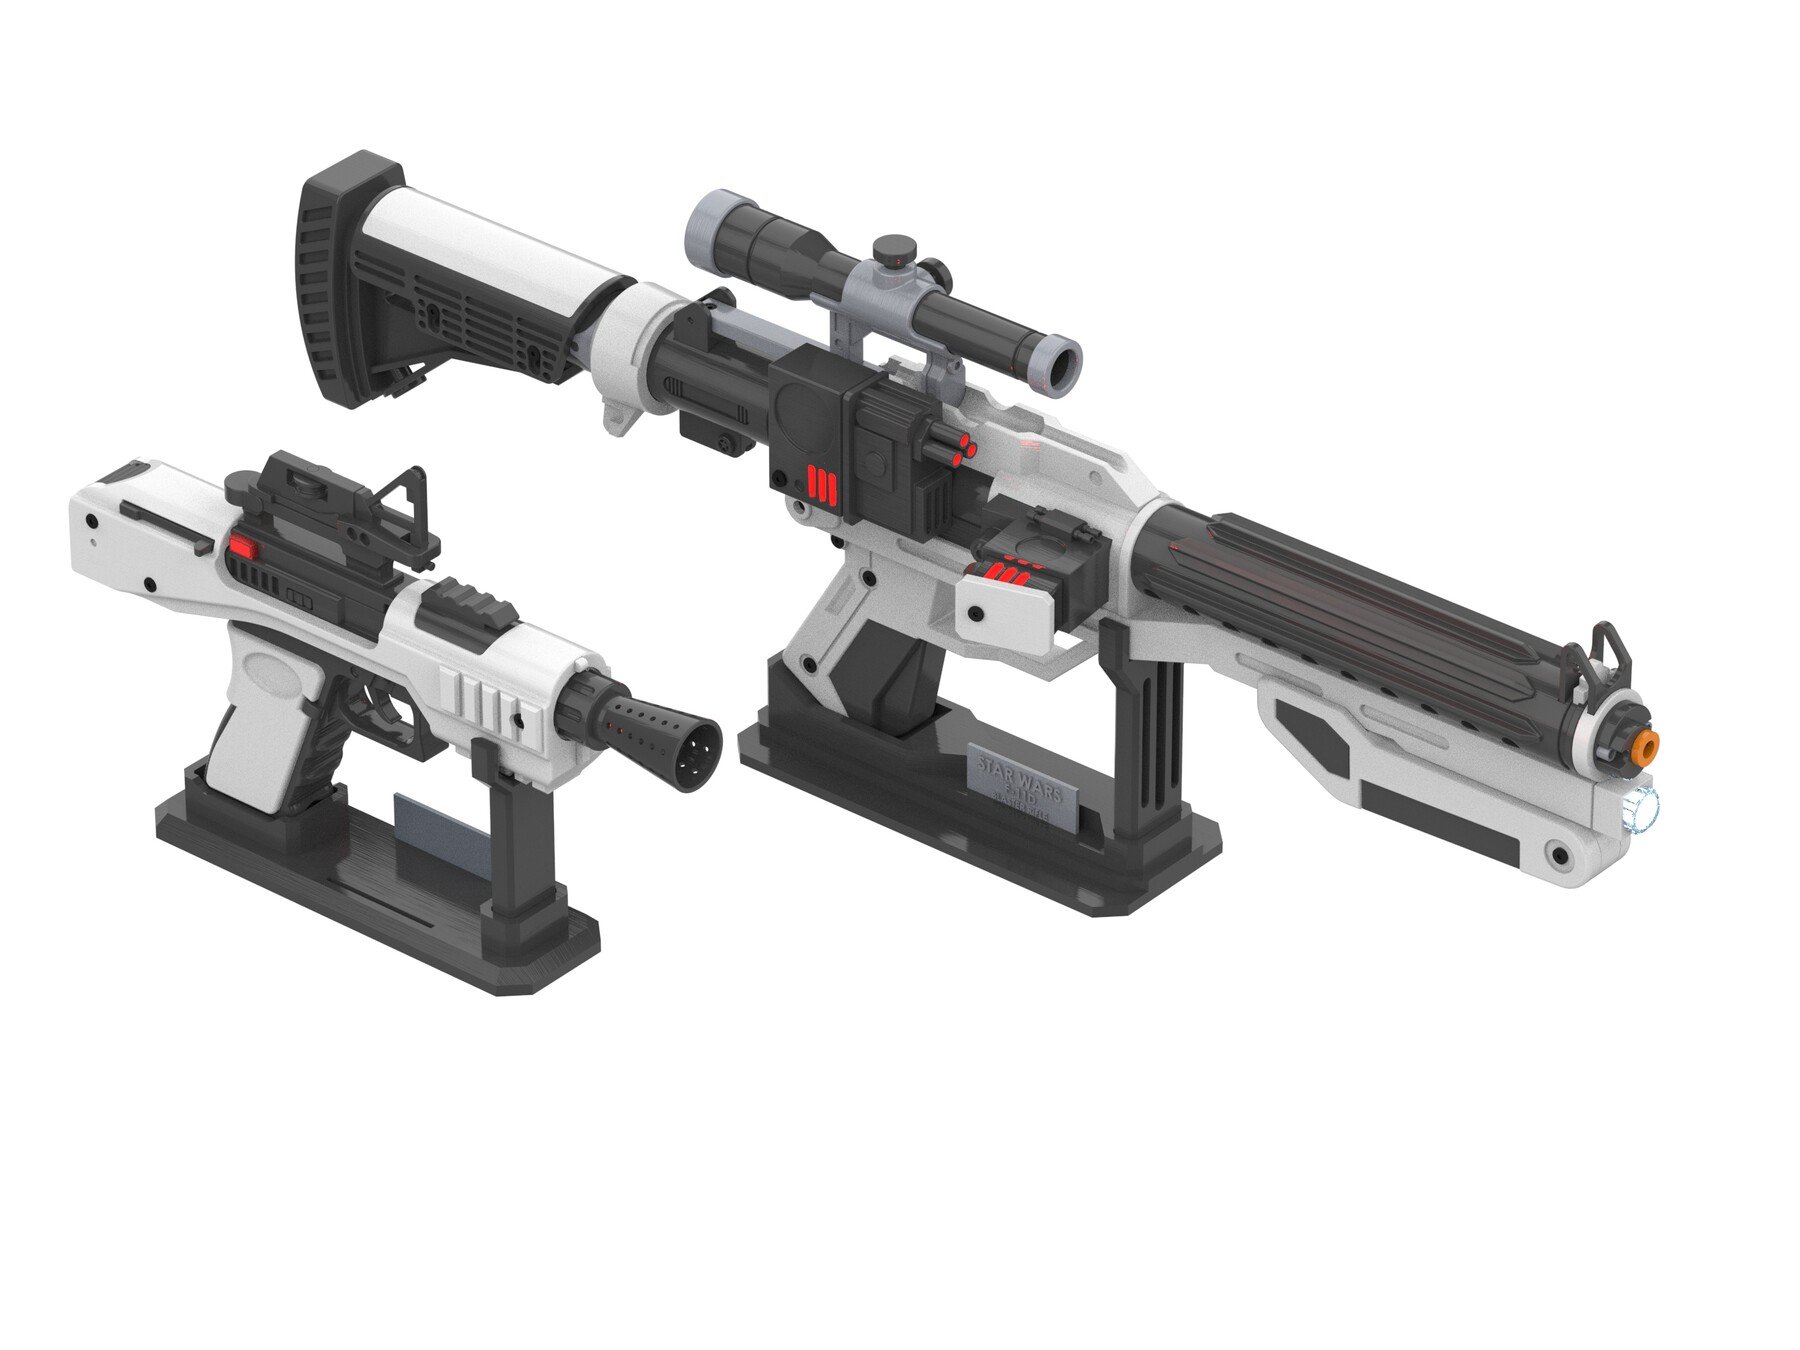 ArtStation - F-11D Blaster Rifle and SE44 Blaster - Star Wars Bundle -  Printable 3d models - STL files